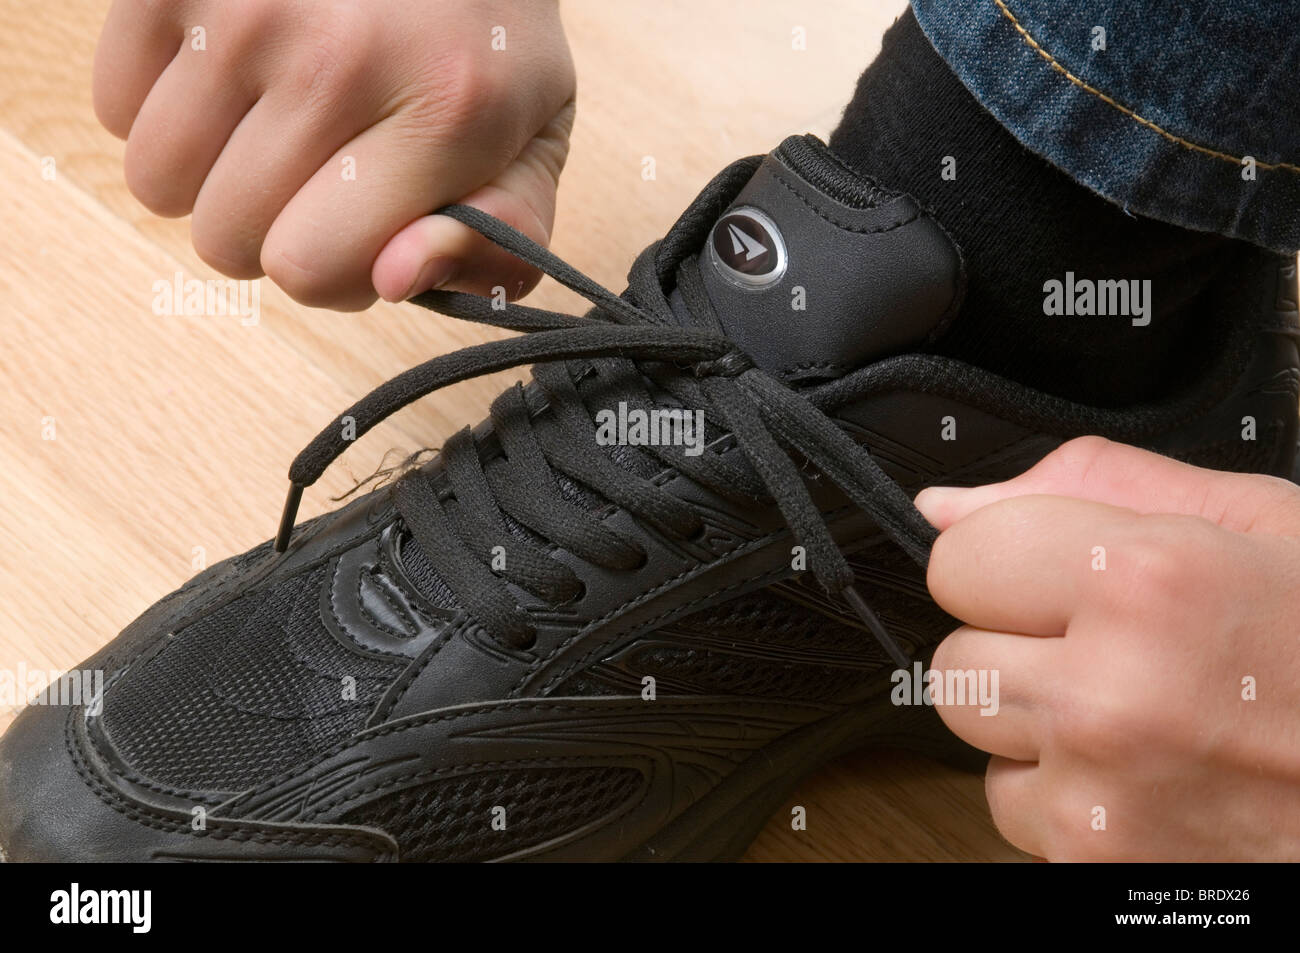 shoe lace tie up